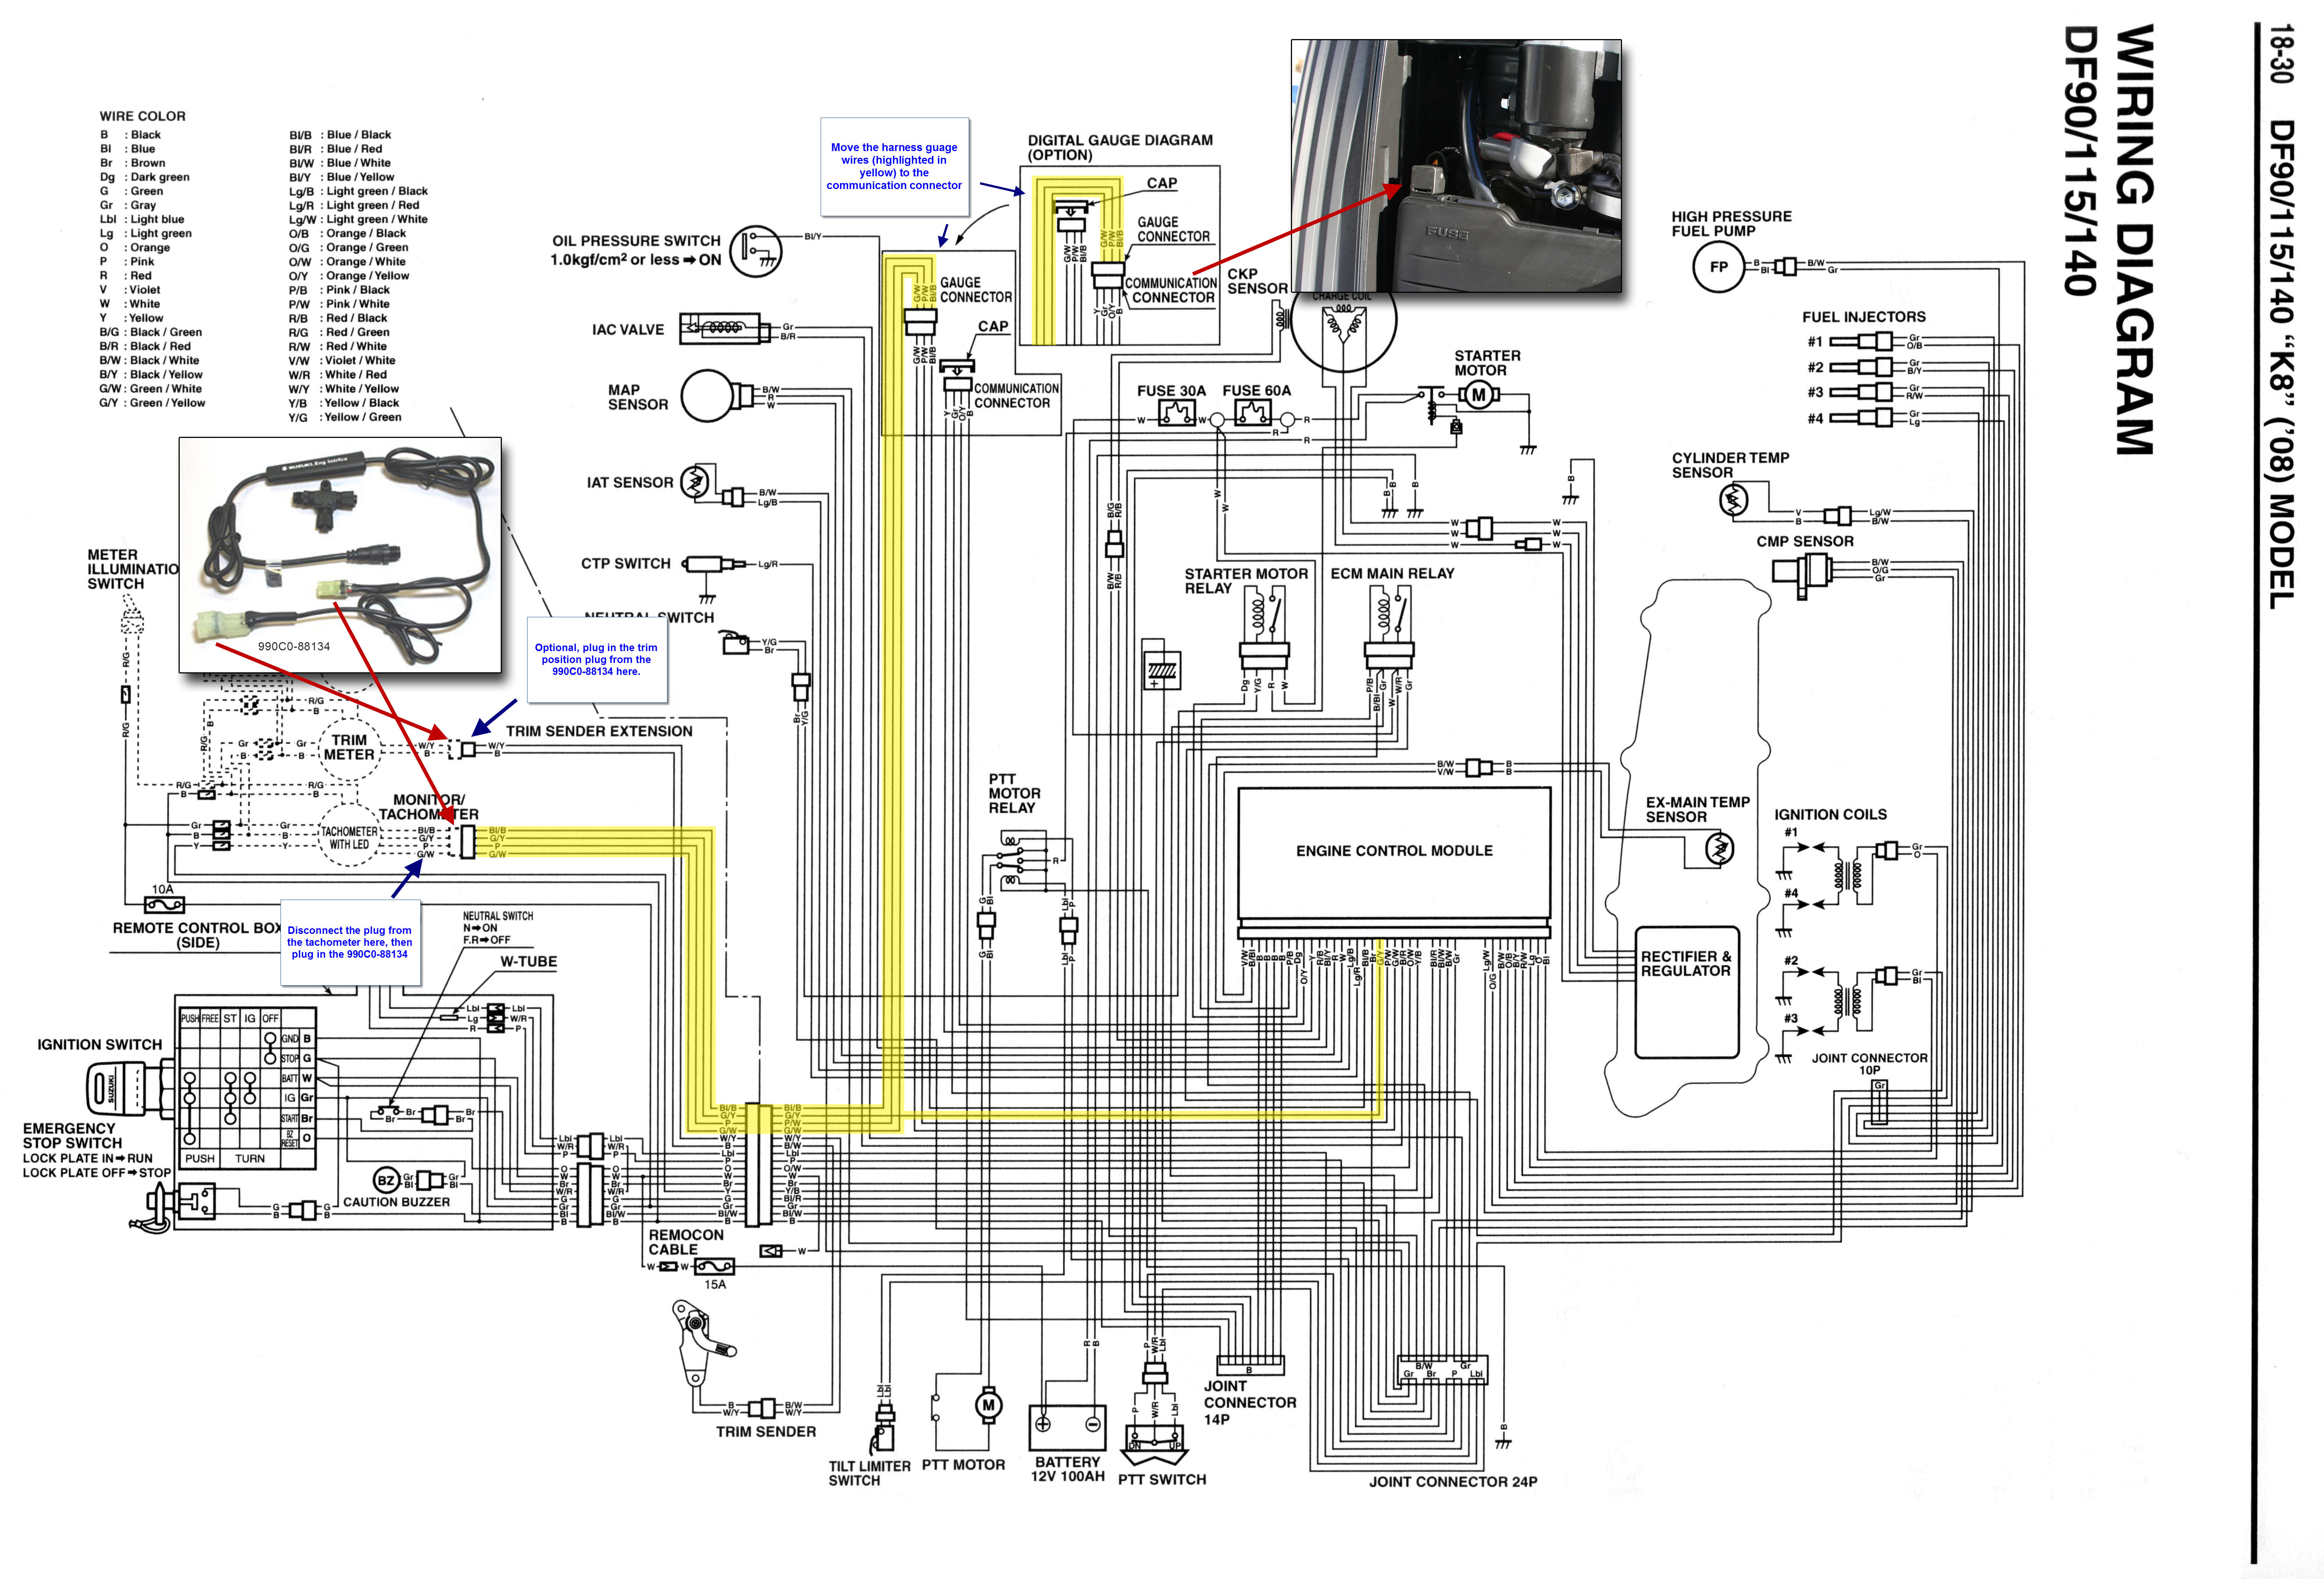 Garmin Wiring Diagram from schematron.org